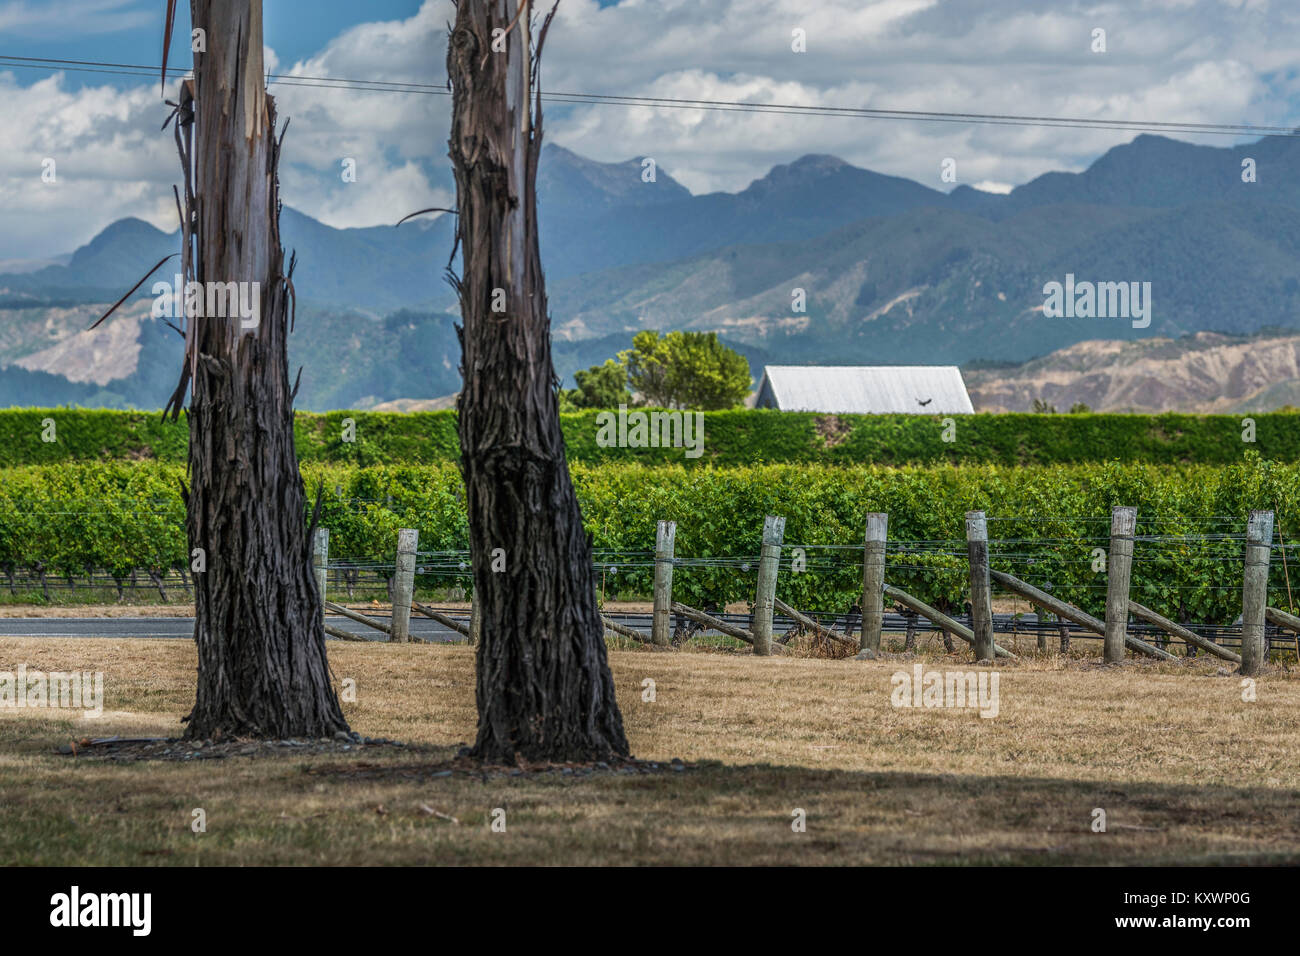 vineyards of Marlborough, New Zealand Stock Photo